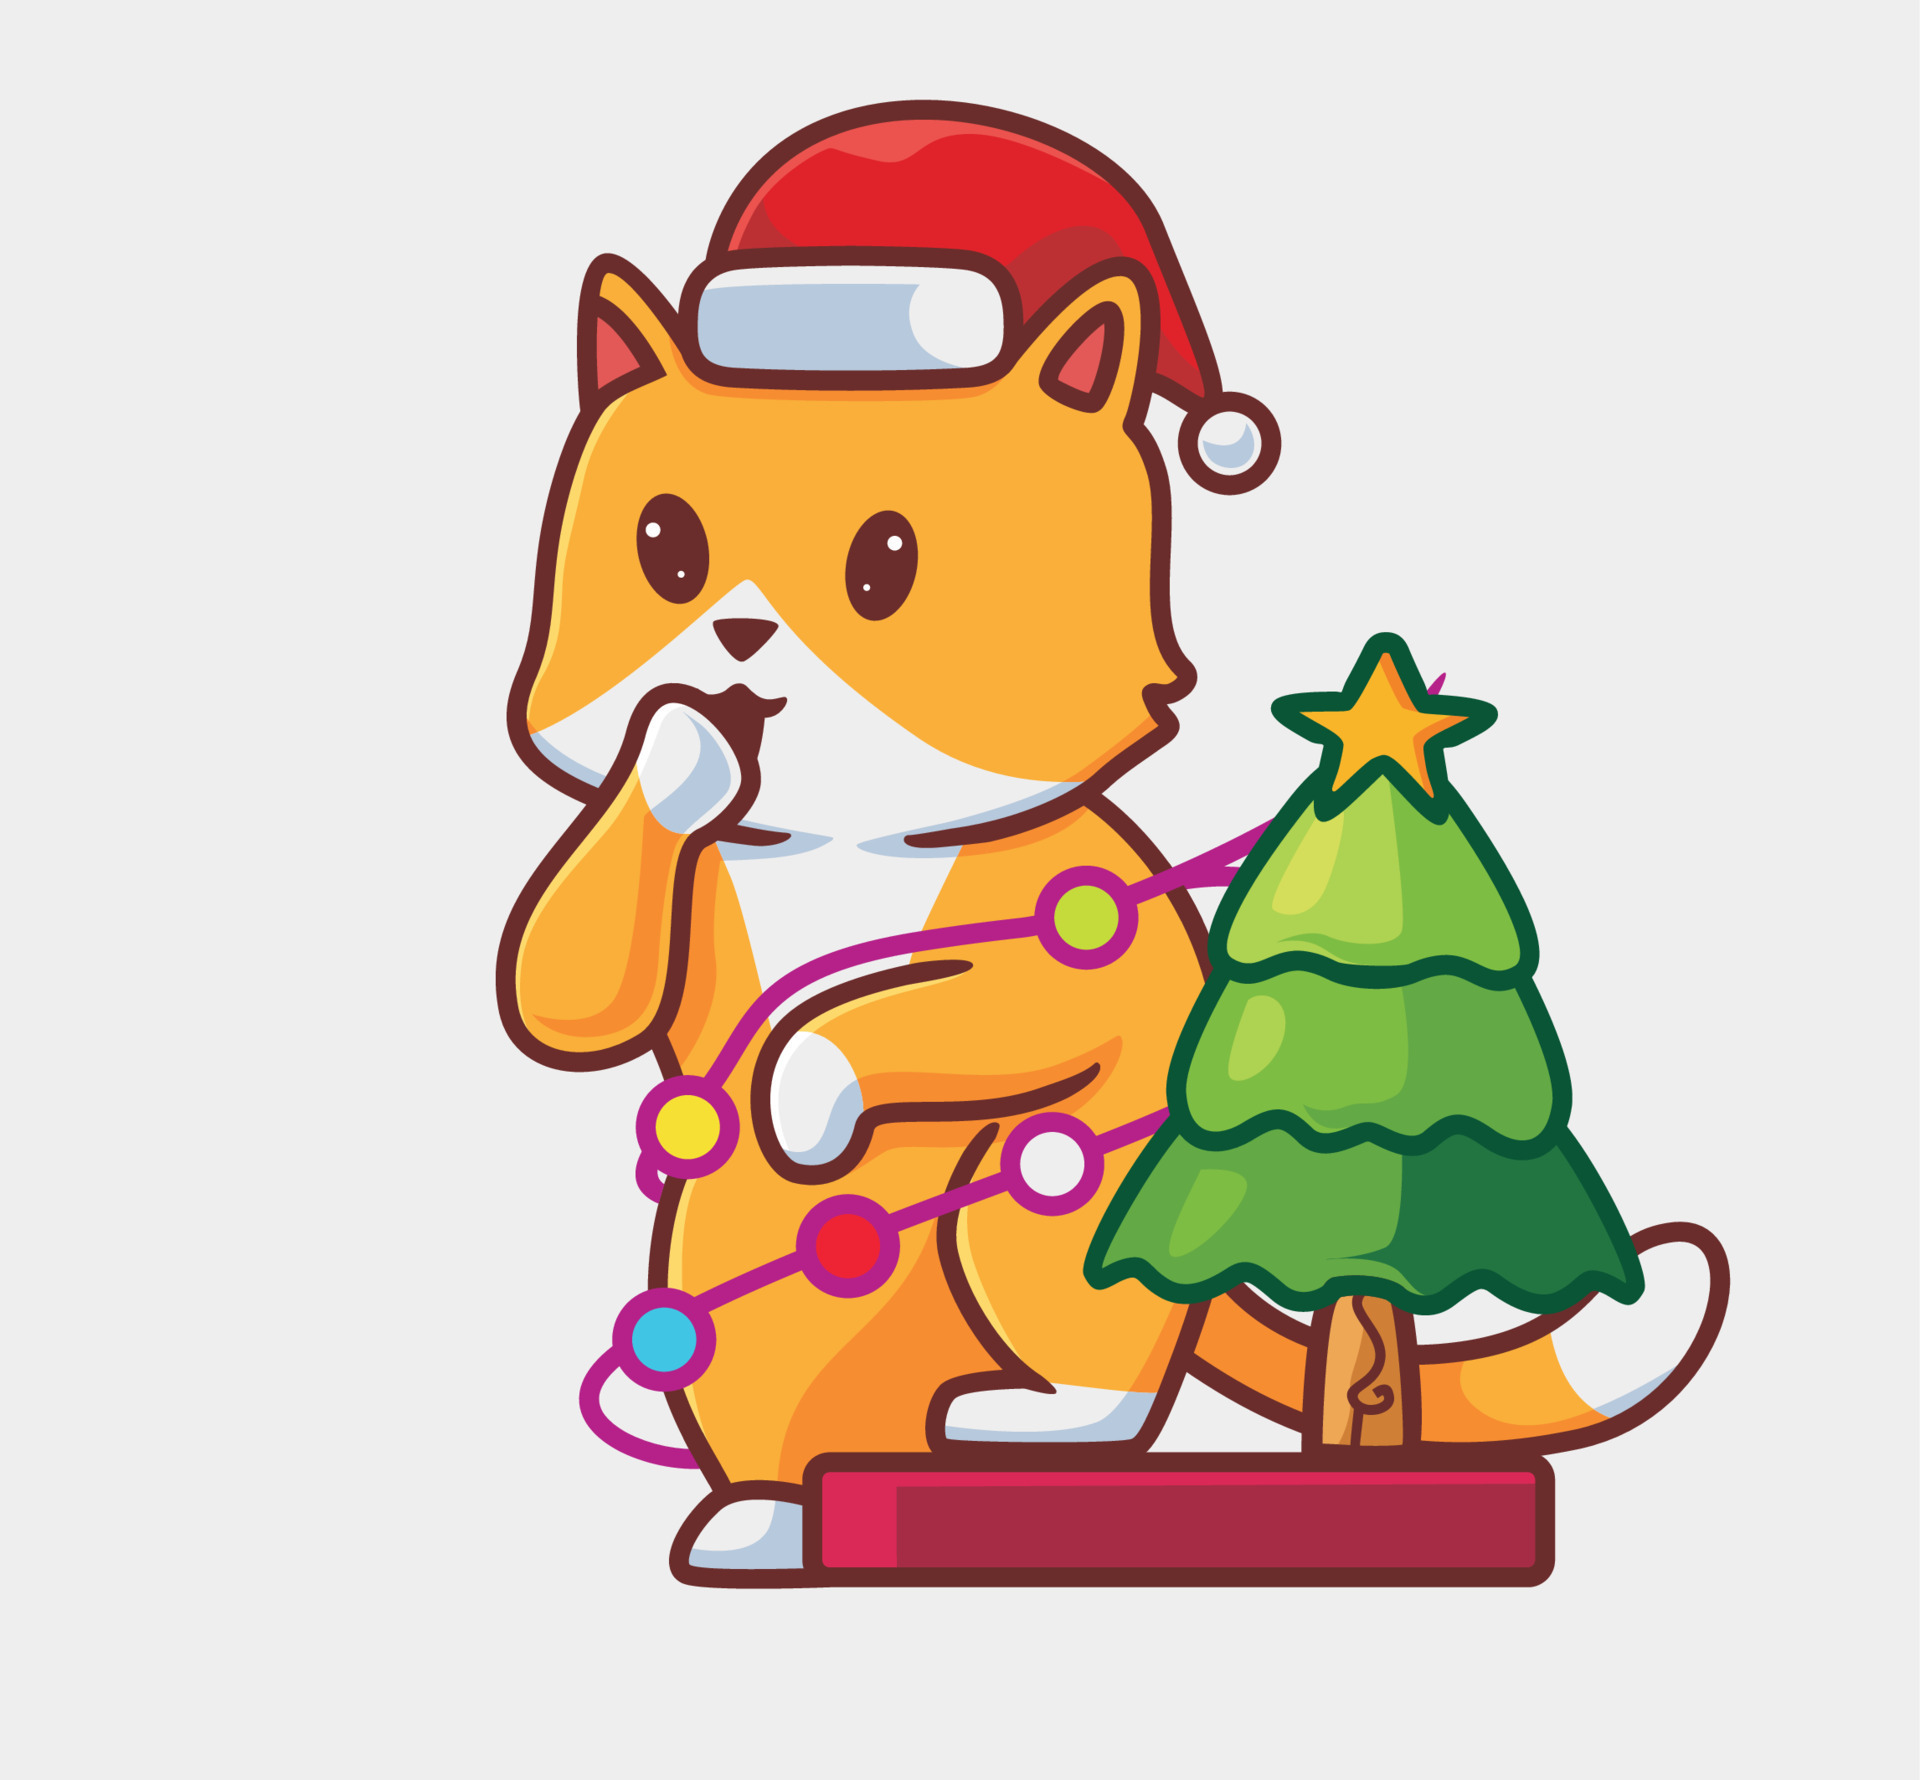 Cute Animal Christmas Tree Stickers